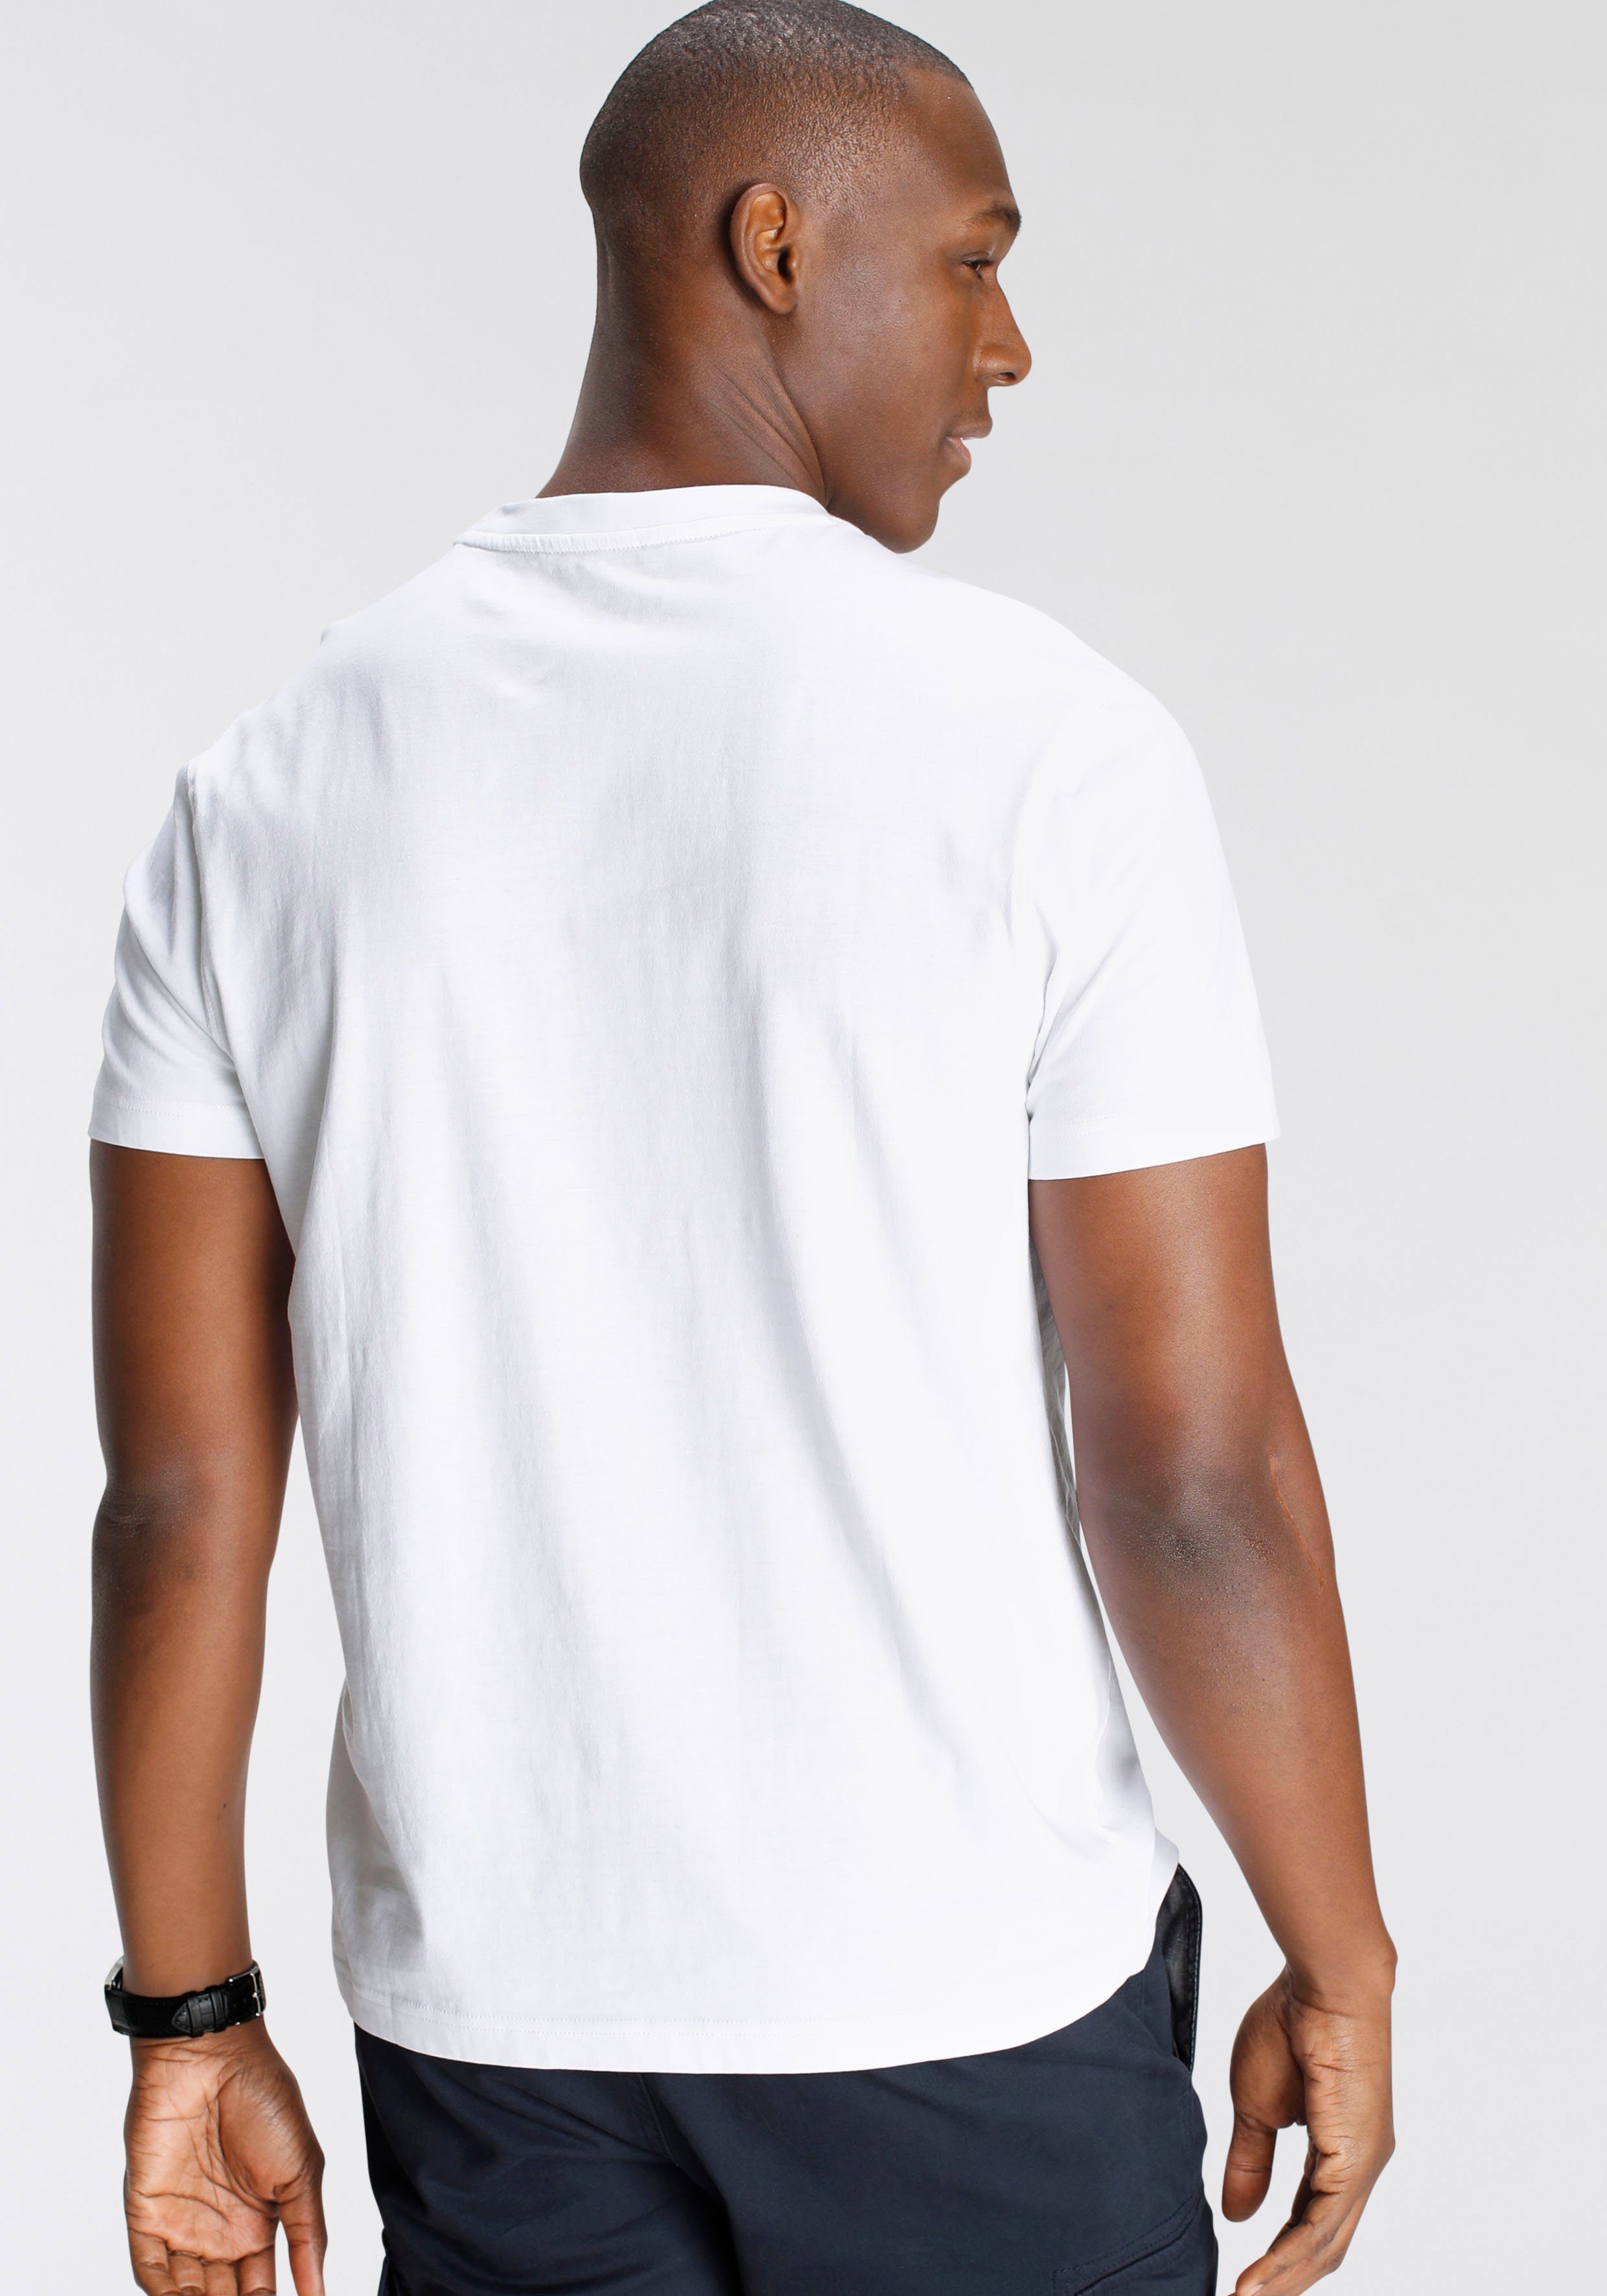 DELMAO T-Shirt Brustprint MARKE! mit NEUE modischem weiss 